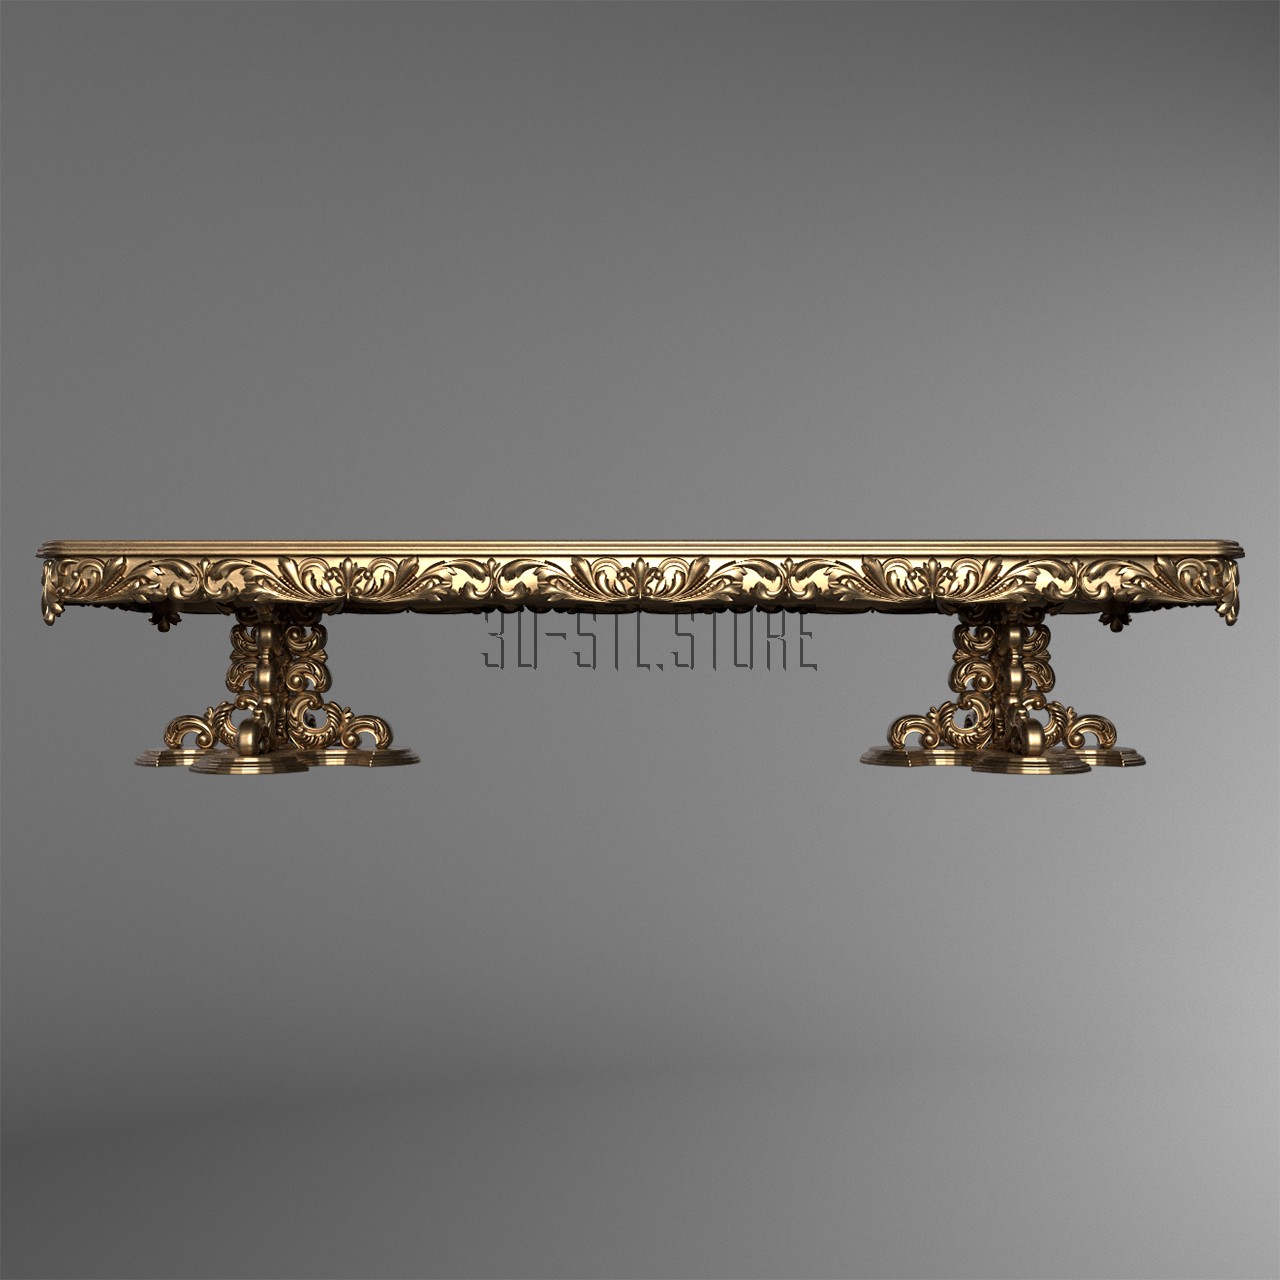 Long table, 3d models (stl)